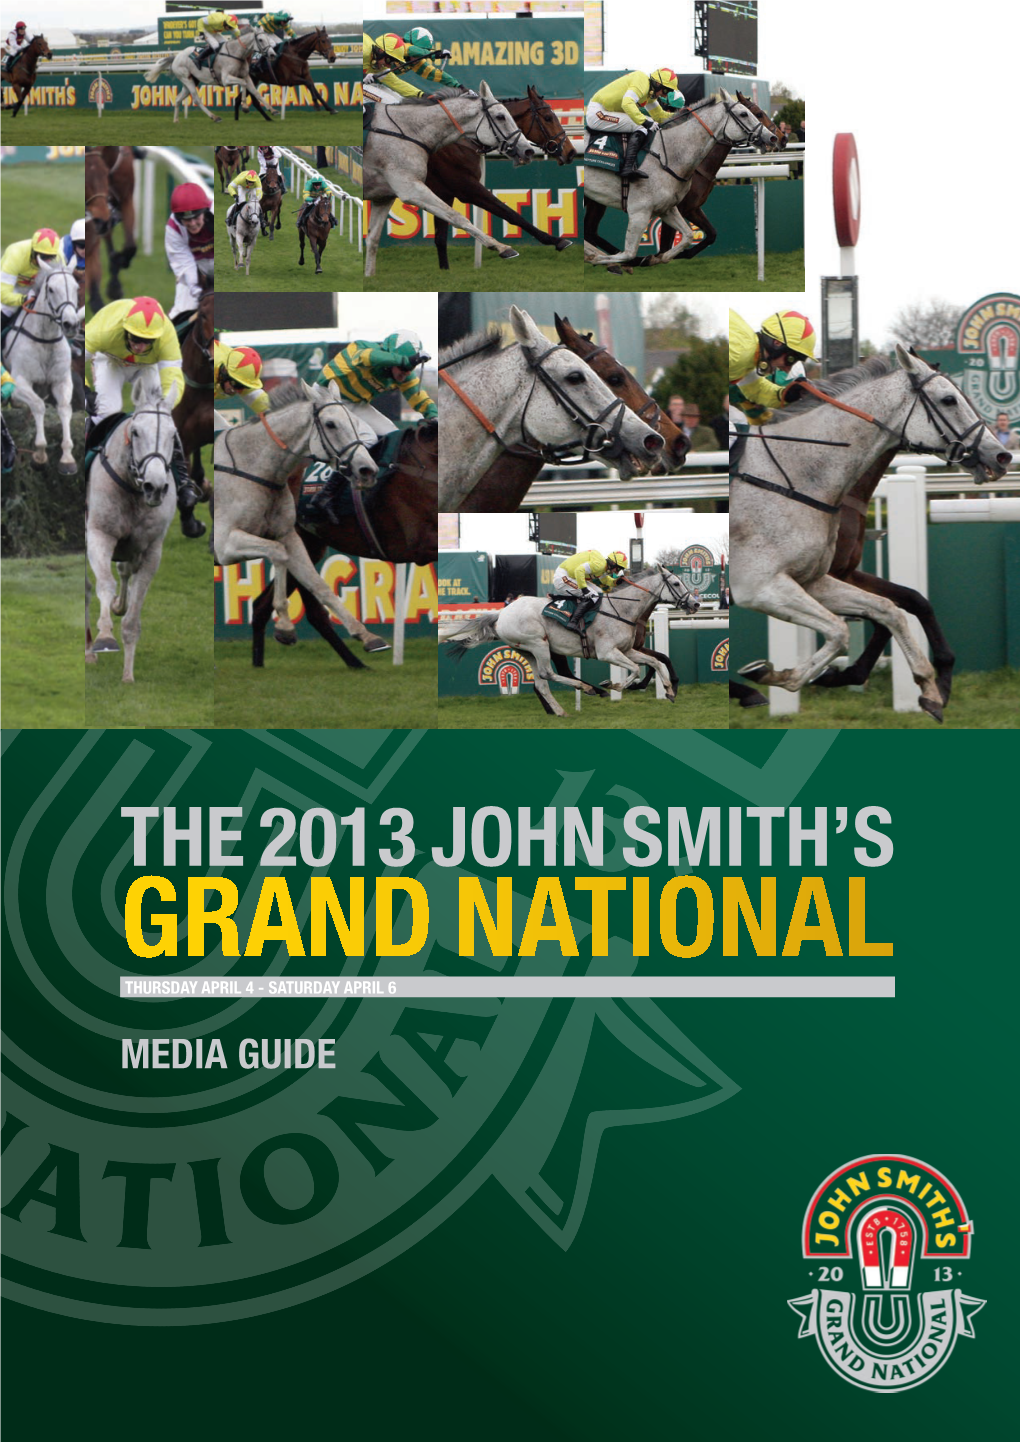 The 2013 John Smith's